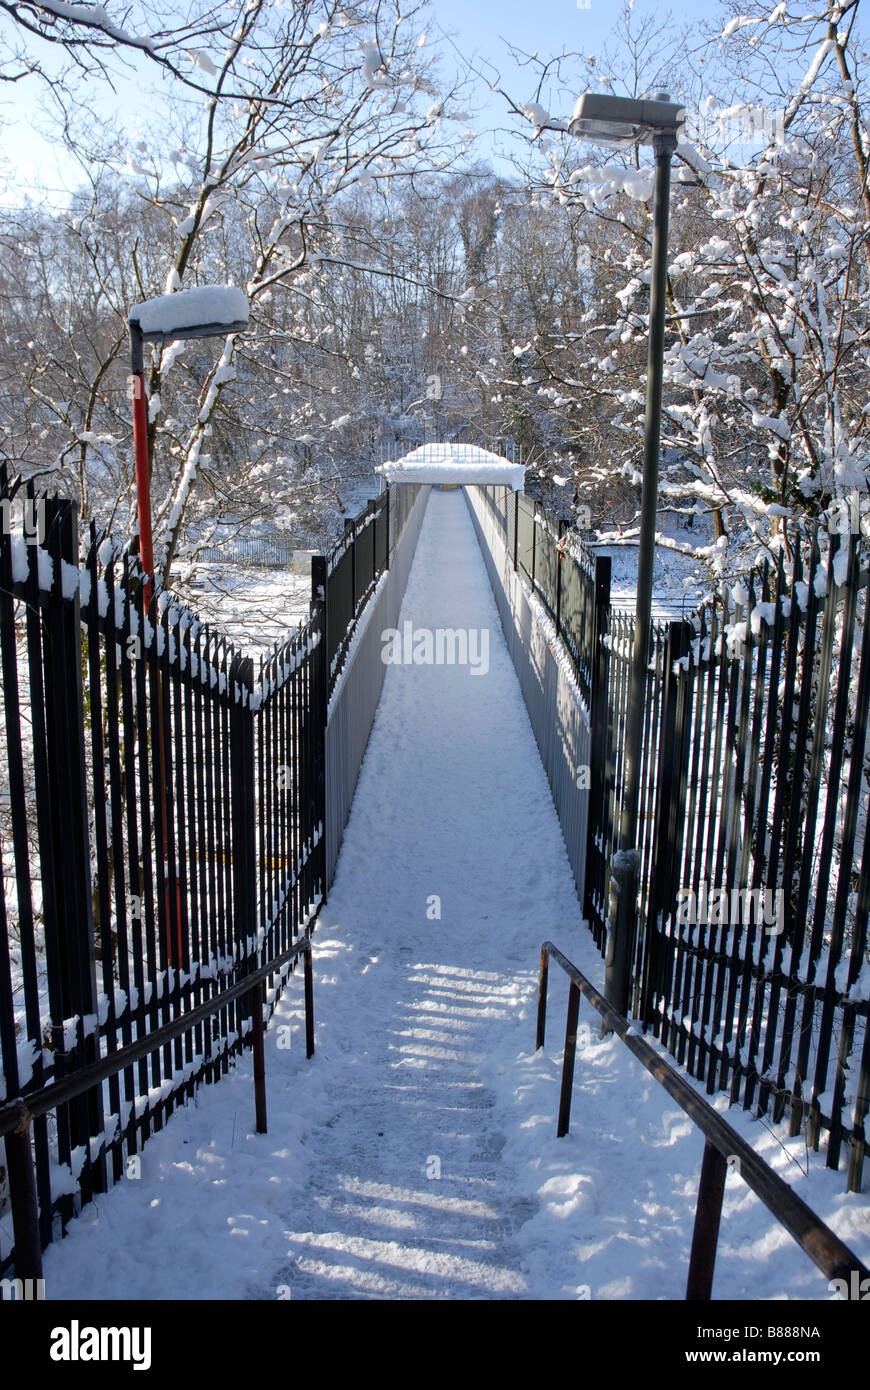 Le fasi che portano alla passerella sulla linea ferroviaria, tutto coperto di neve Foto Stock